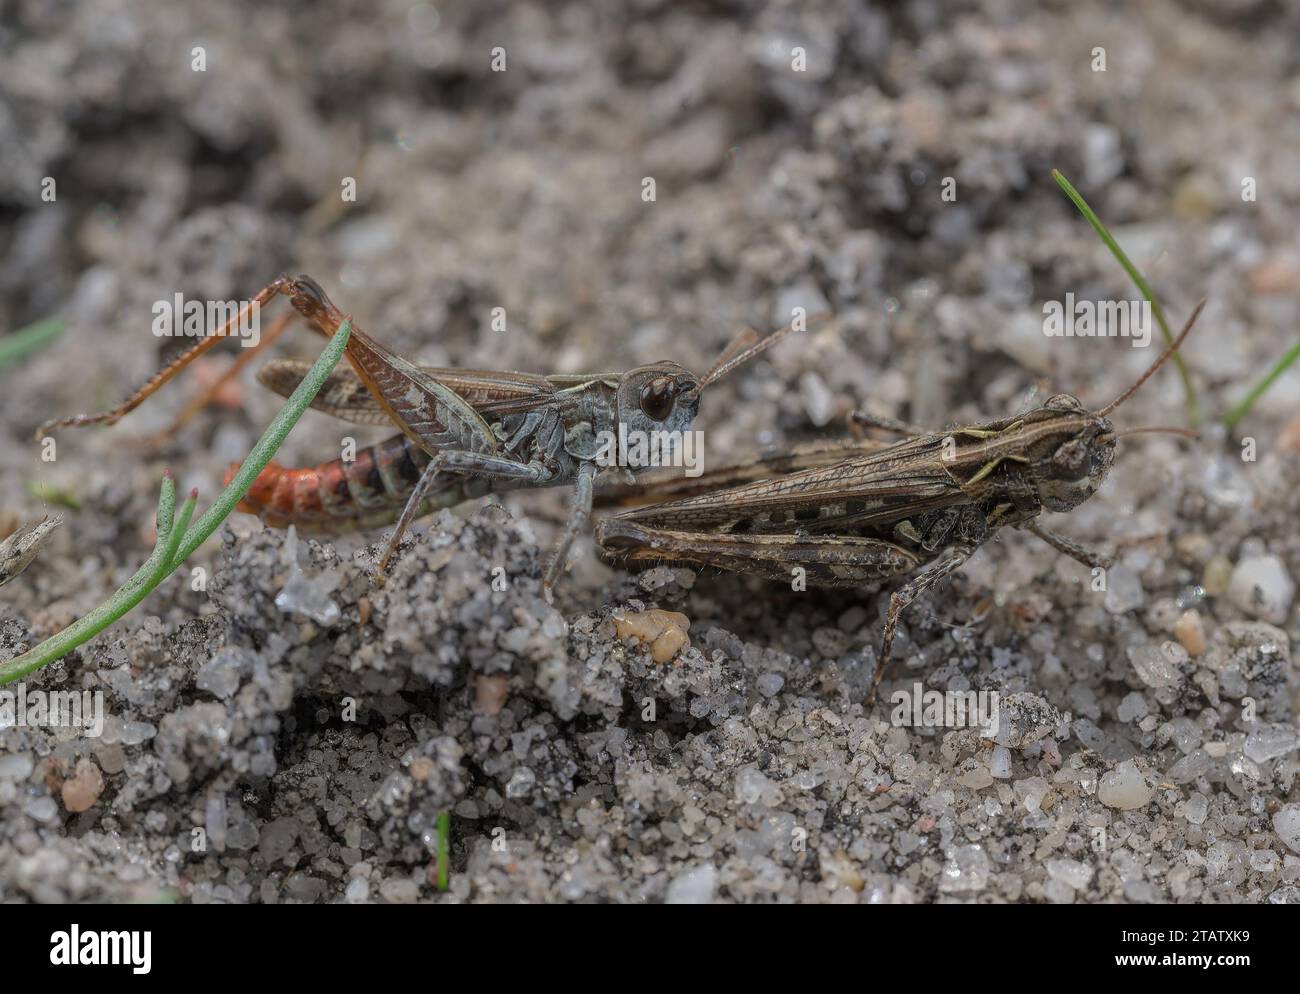 Heath Grasshopper, Chorthippus vagans on sandy heathland, Dorset. Female in front, male beyond. Stock Photo